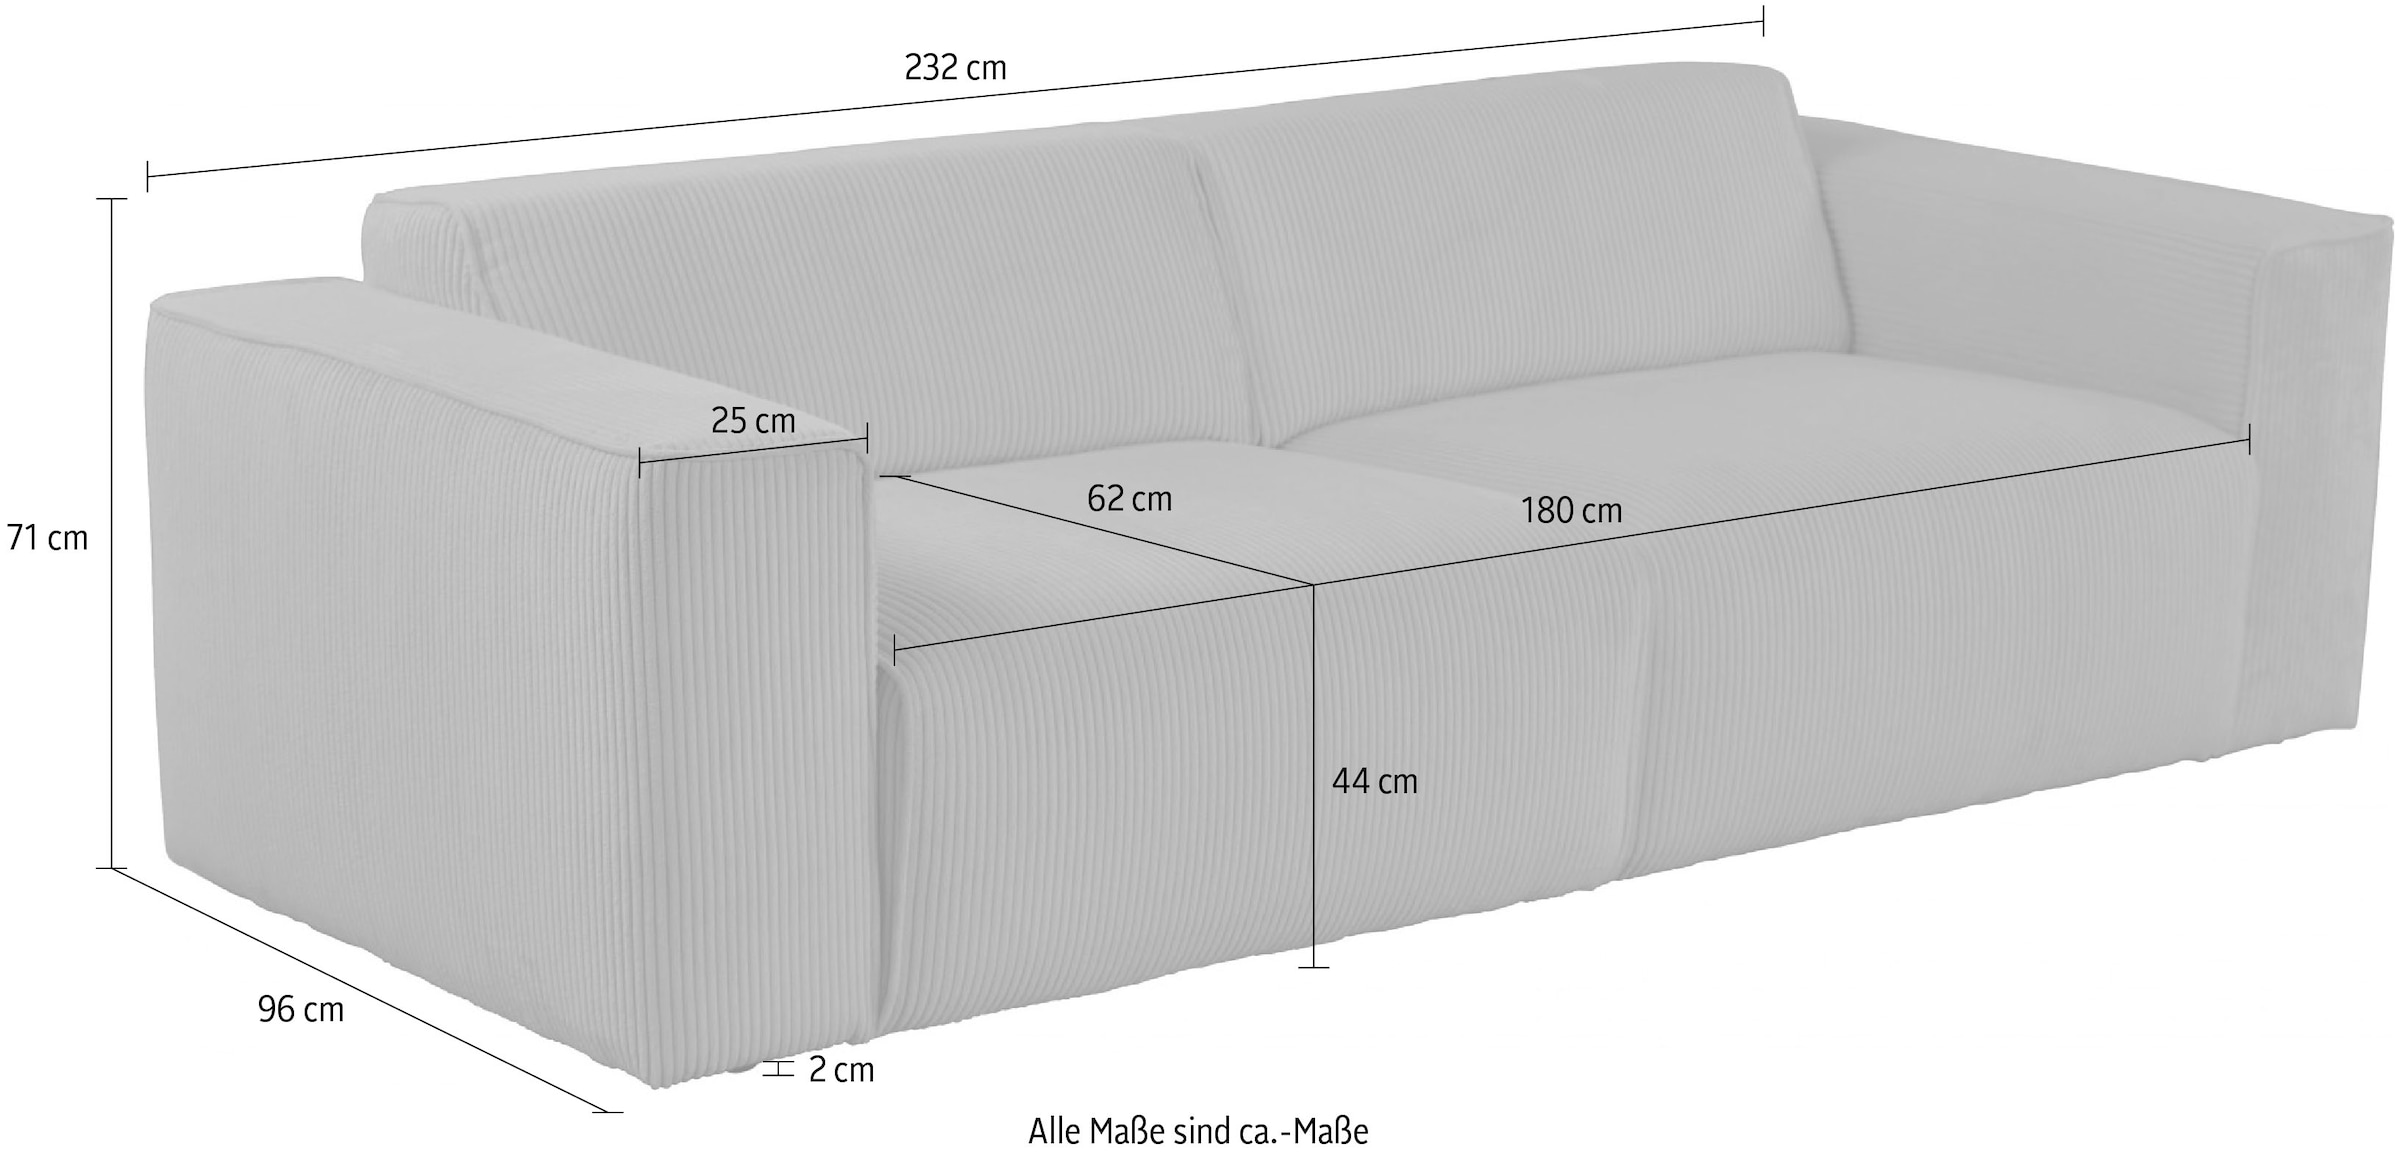 andas 3-Sitzer »Noord, 232cm,«, mit Kedernaht, Cord, Luxus-Microfaser, Struktur, Struktur grob